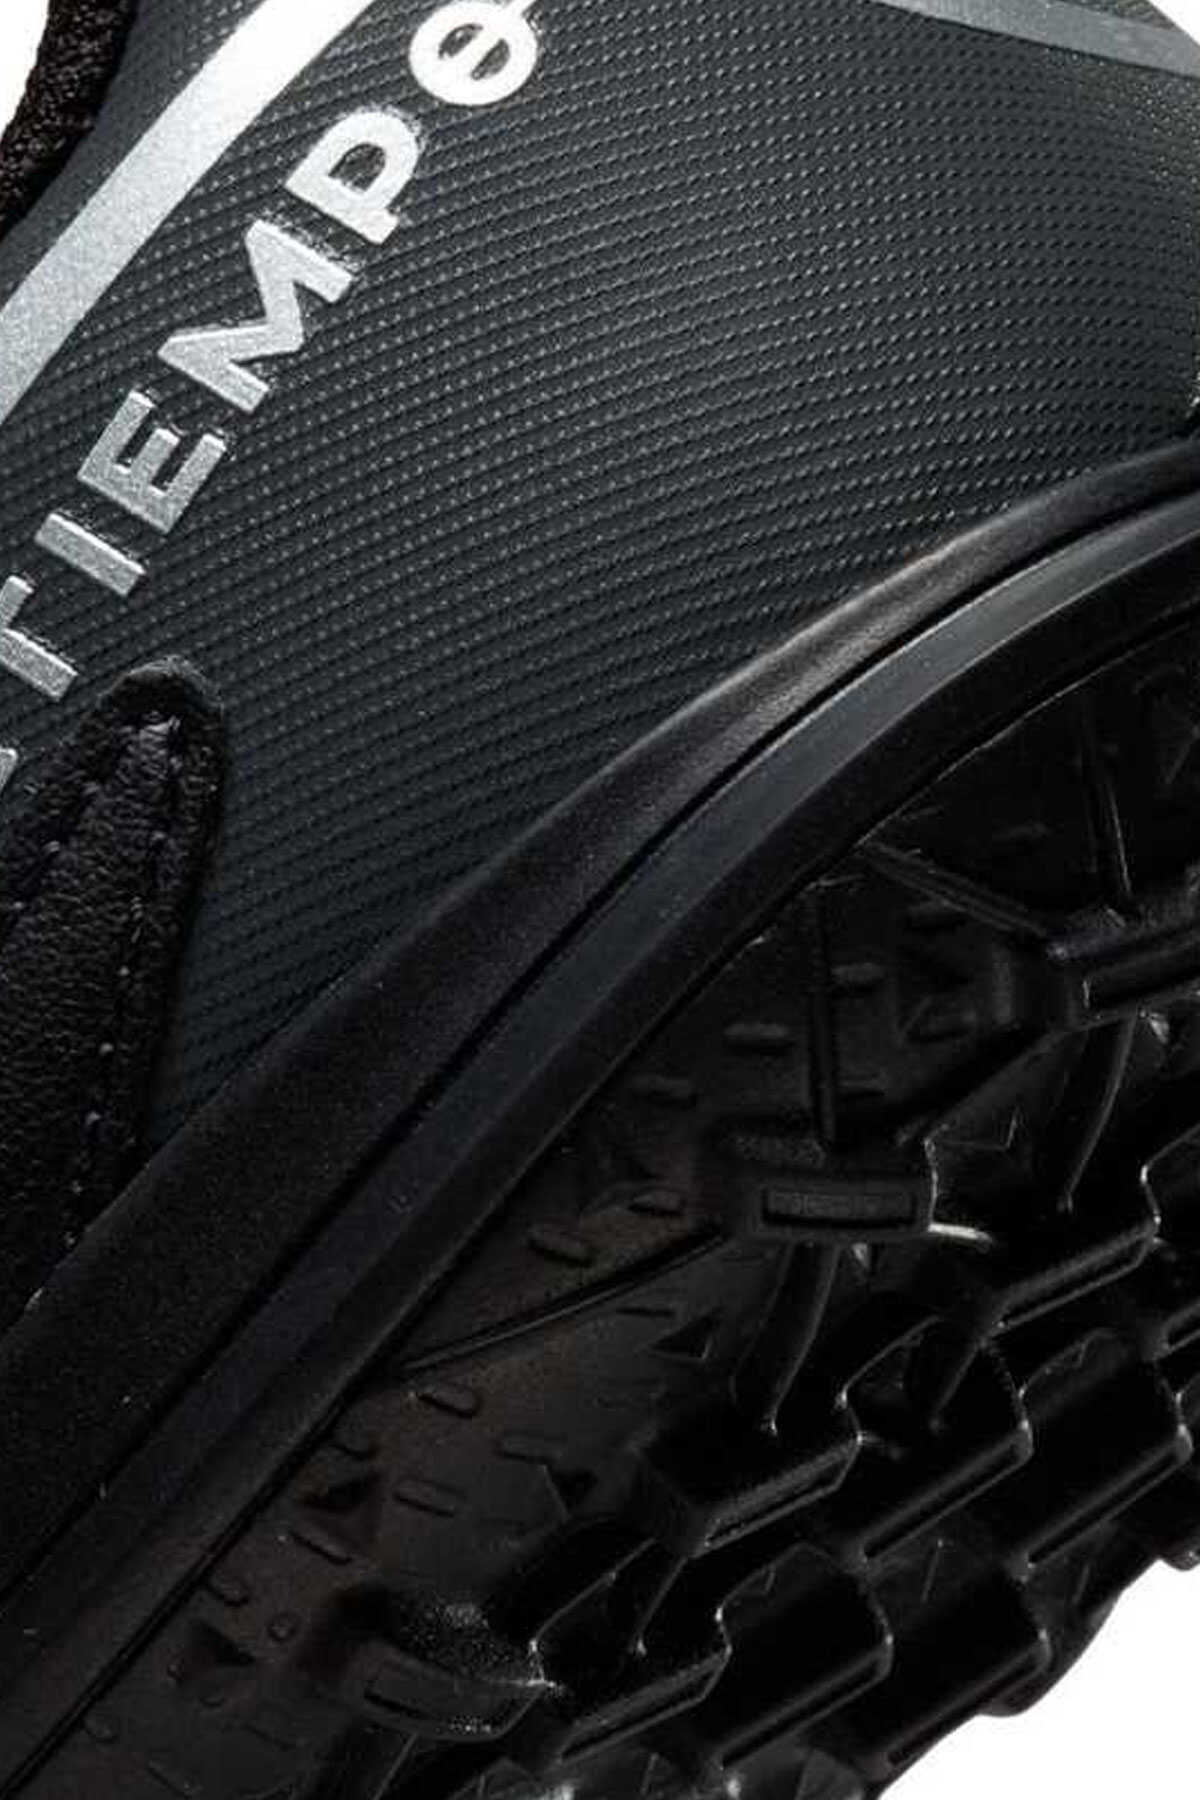 کفش استوک چمن مصنوعی پسرانه مشکی مدل Da1334-007 برند Nike 